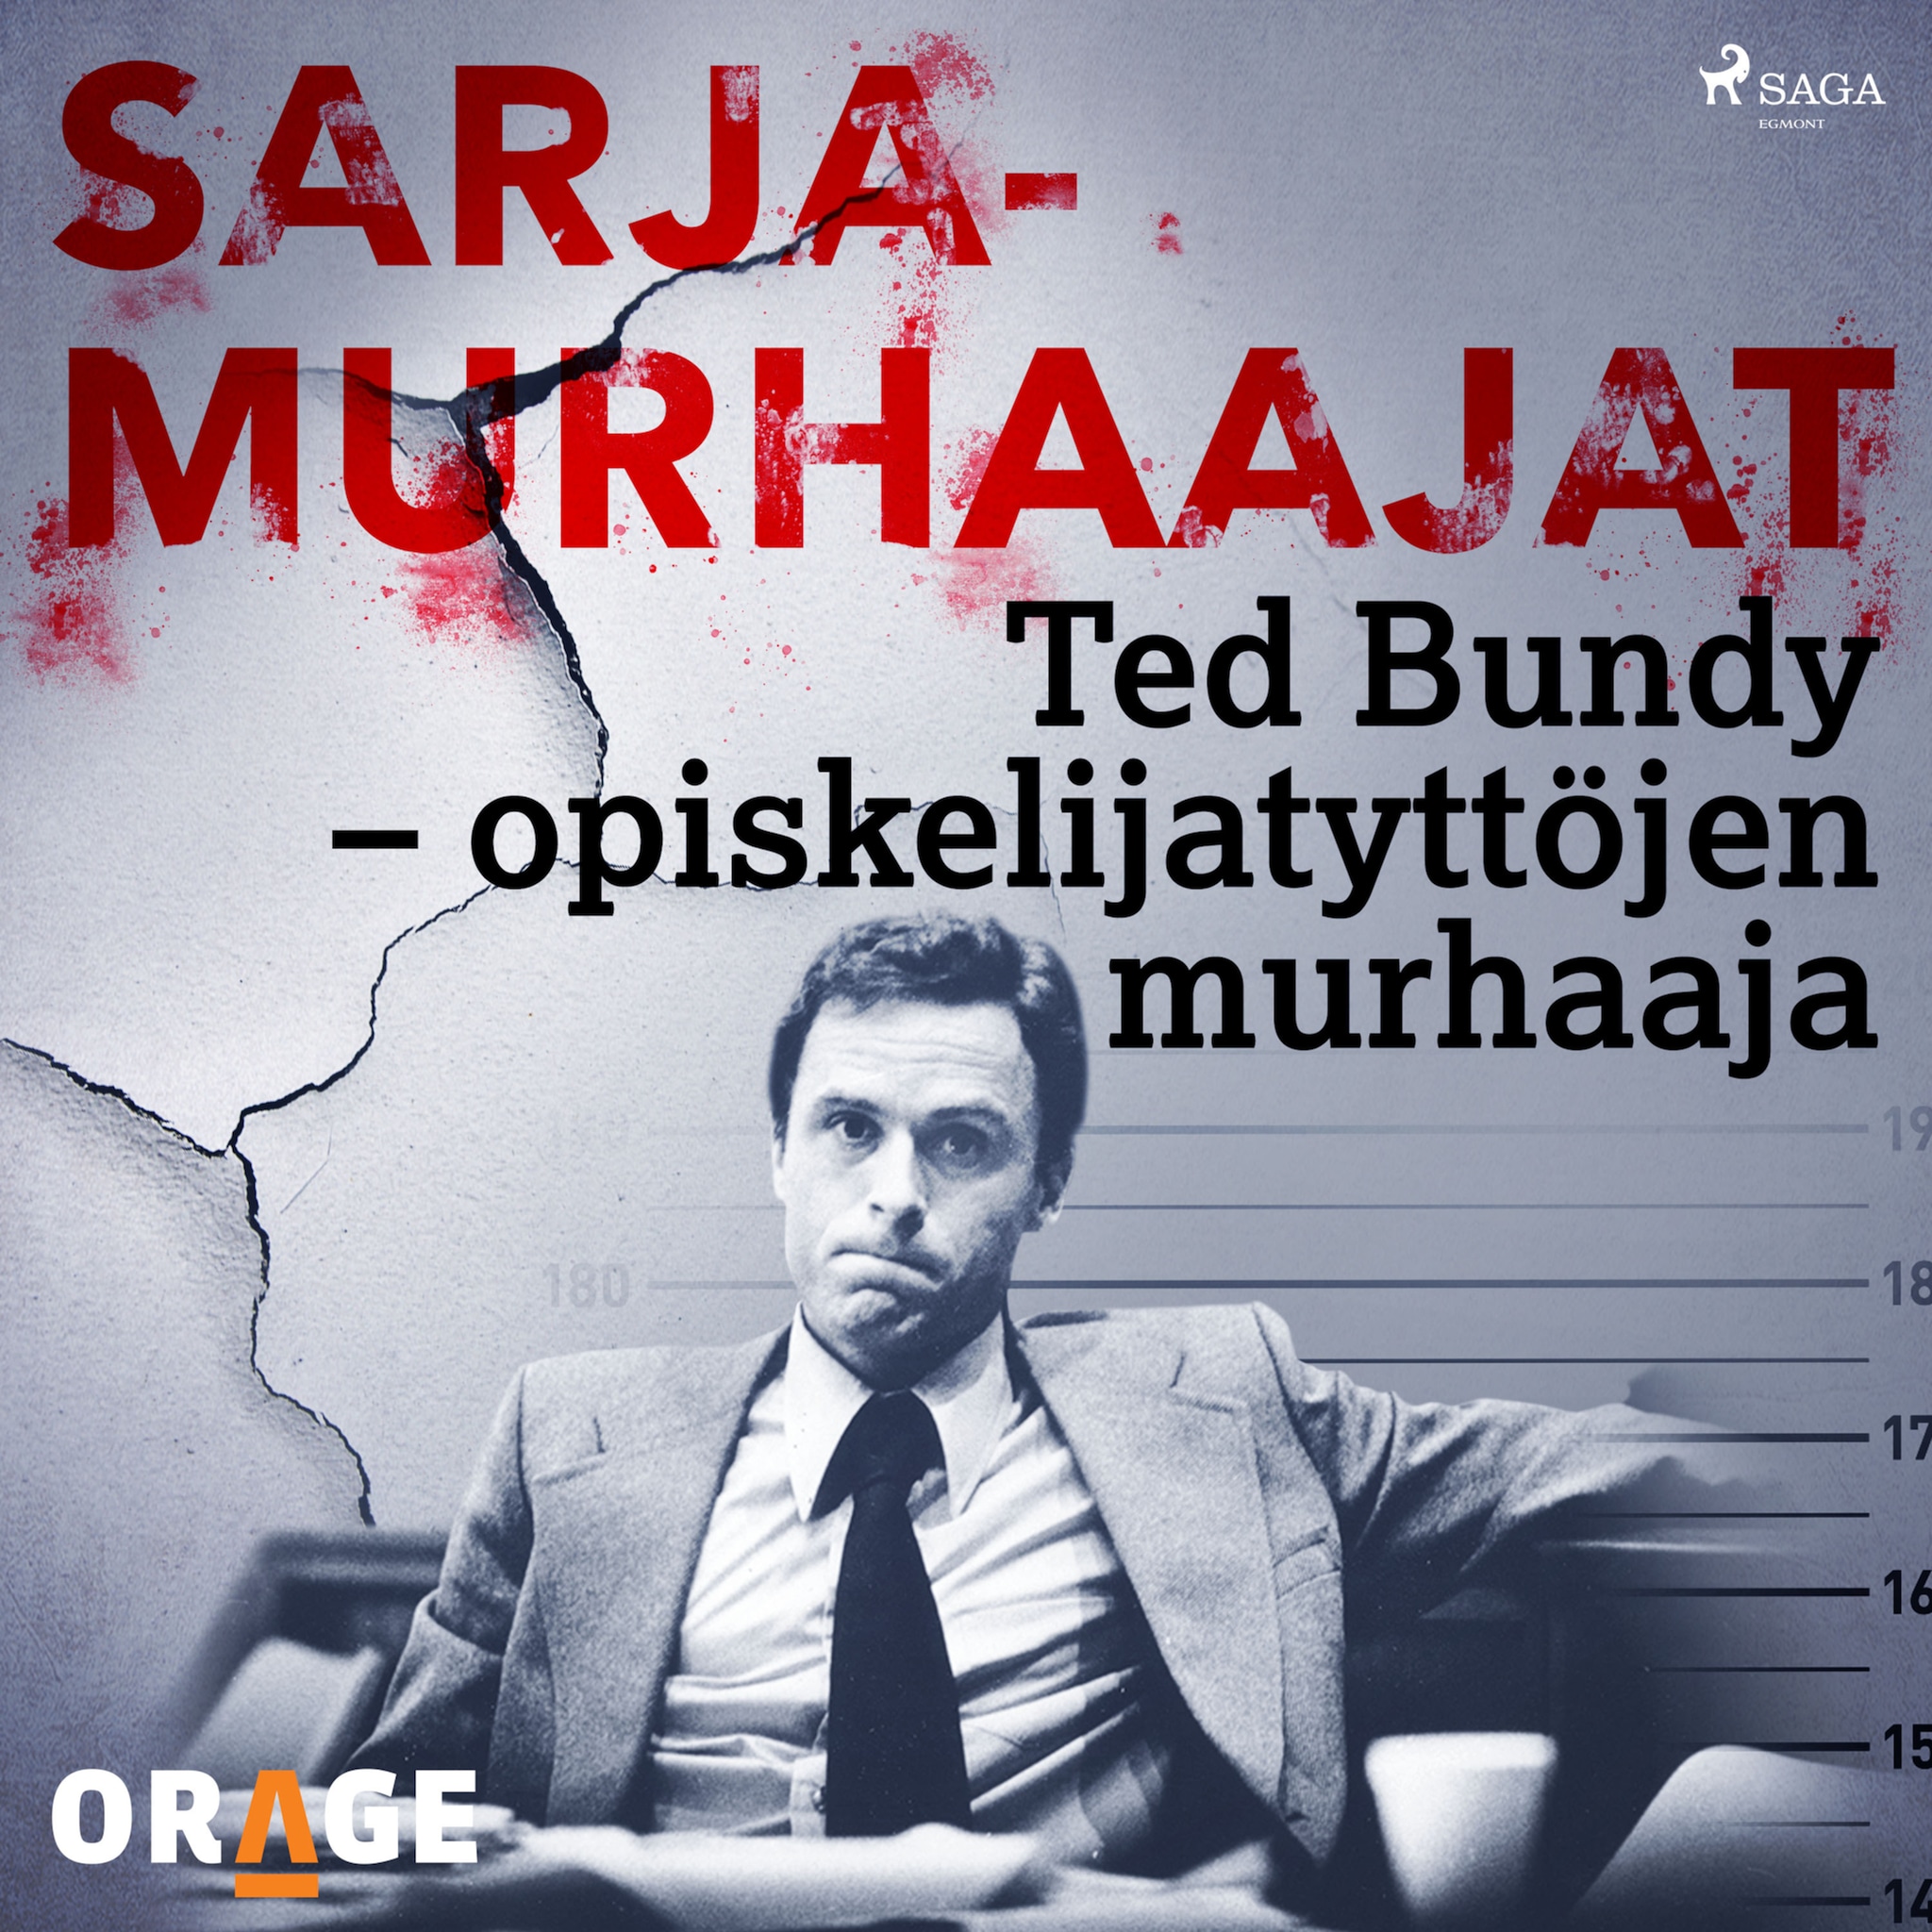 Ted Bundy – opiskelijatyttöjen murhaaja ilmaiseksi